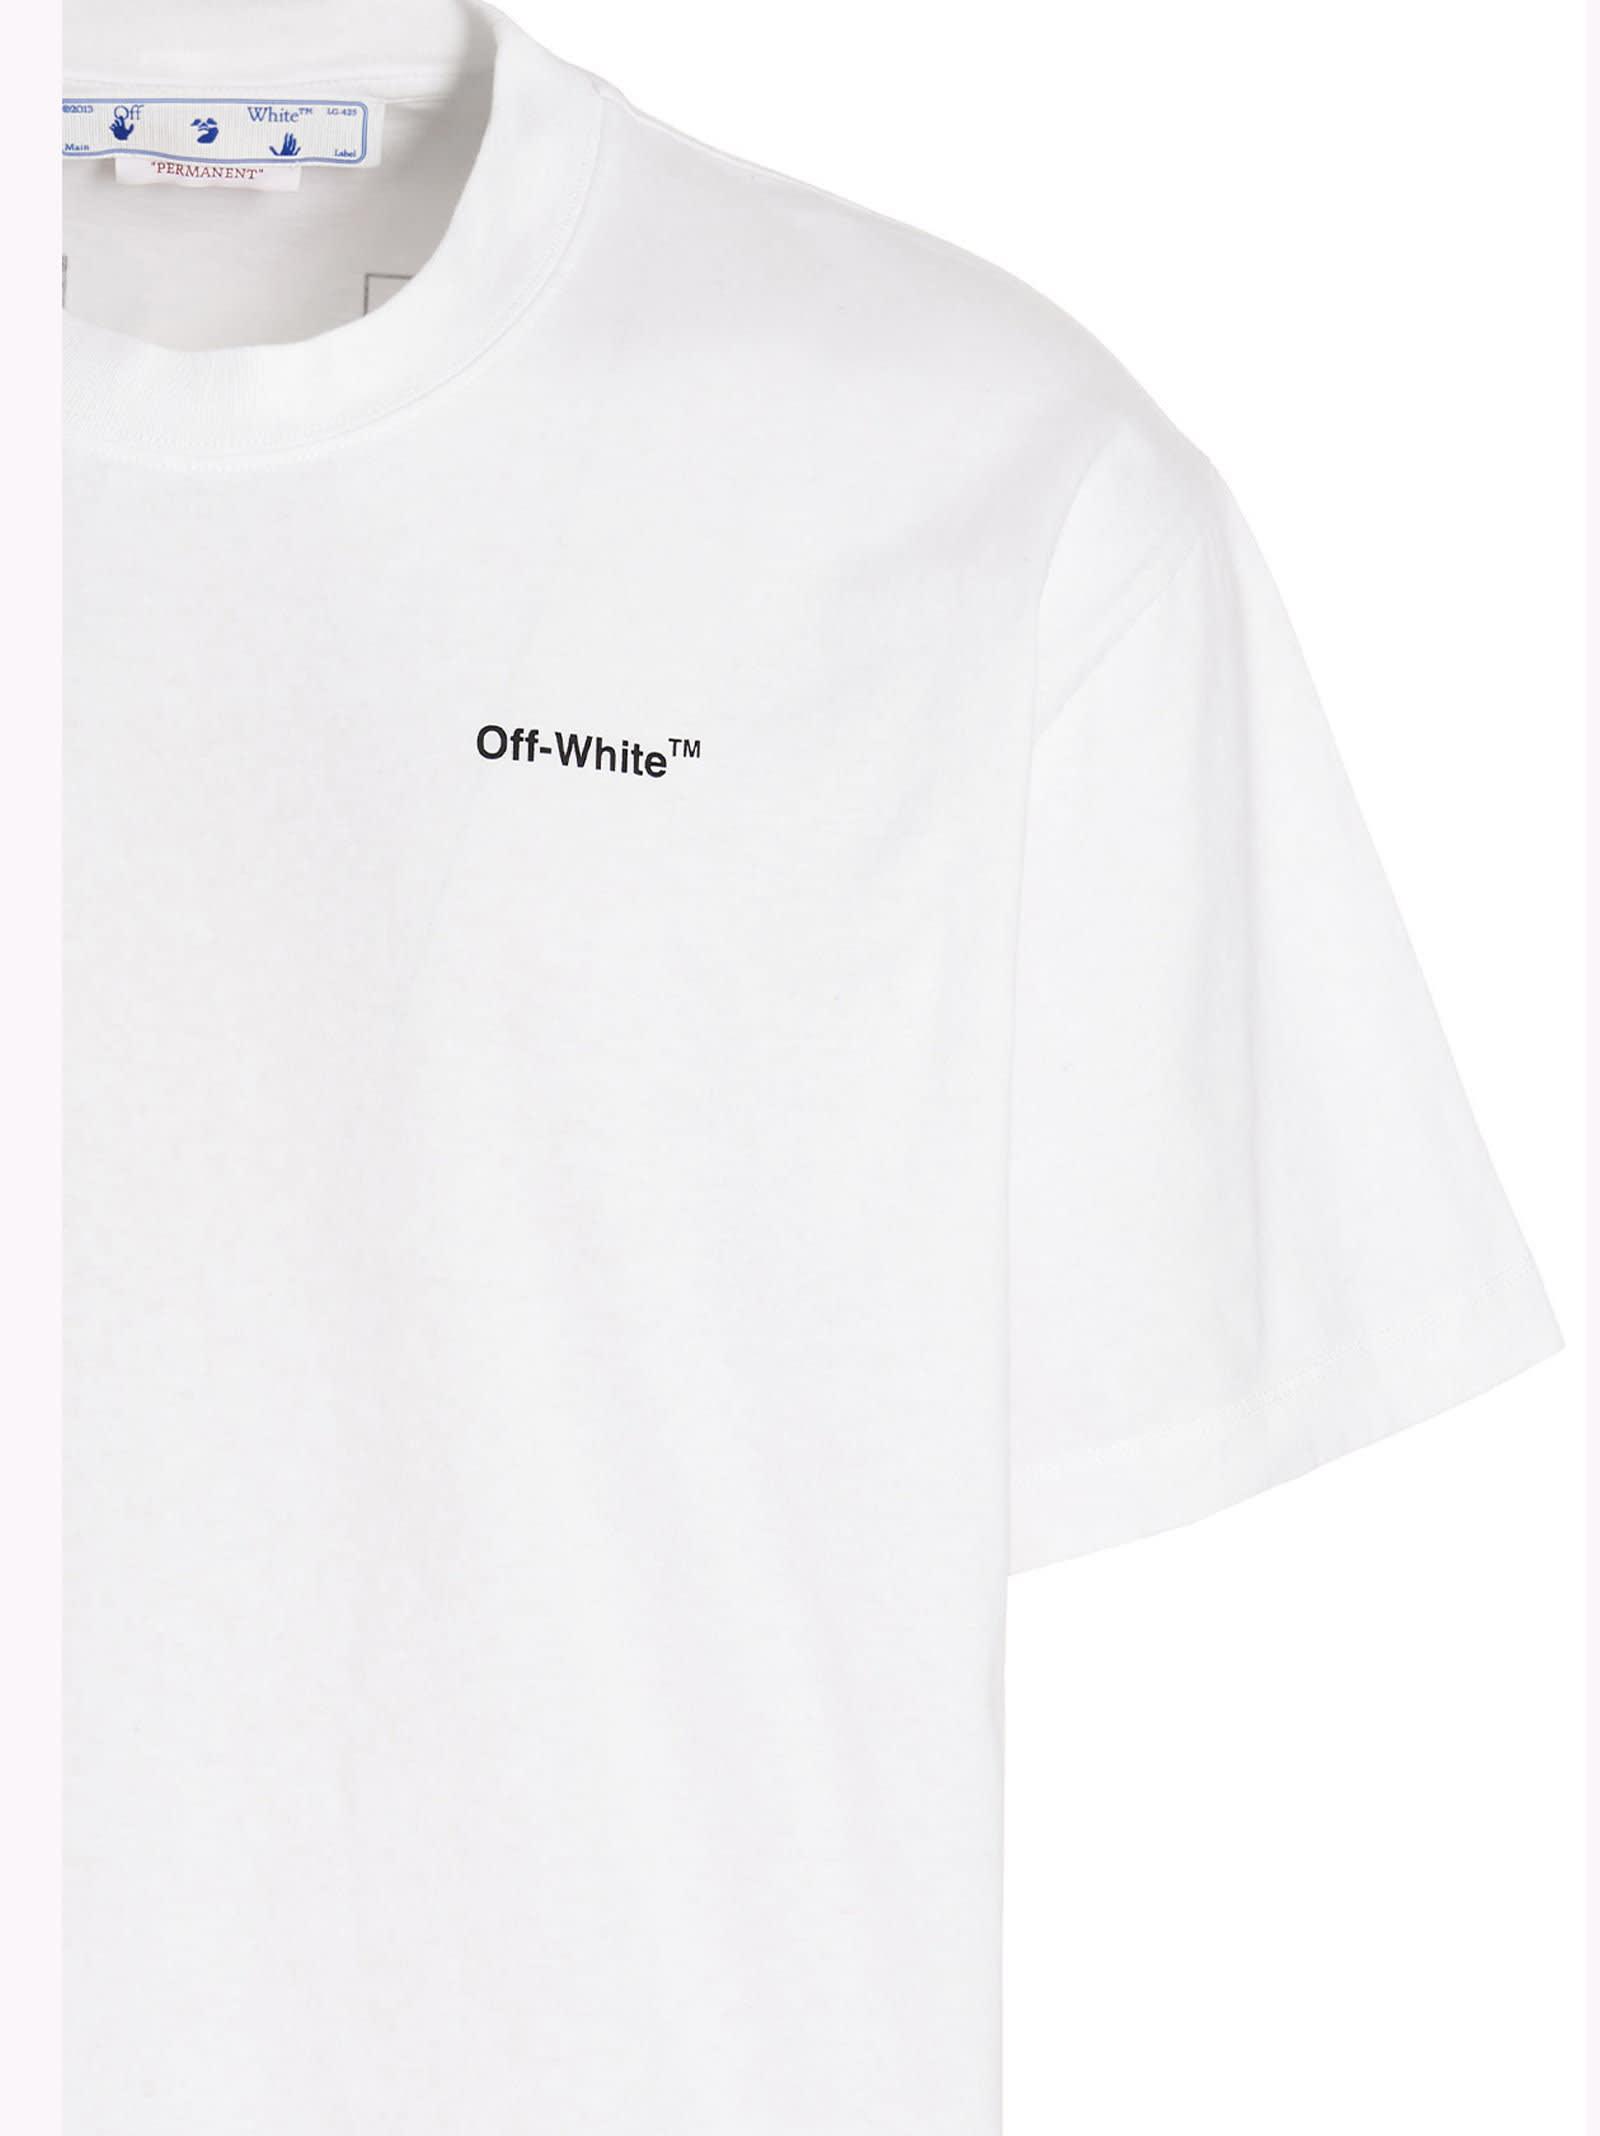 Off-White c/o Virgil Abloh Outline Arrow T-shirt in White for Men | Lyst